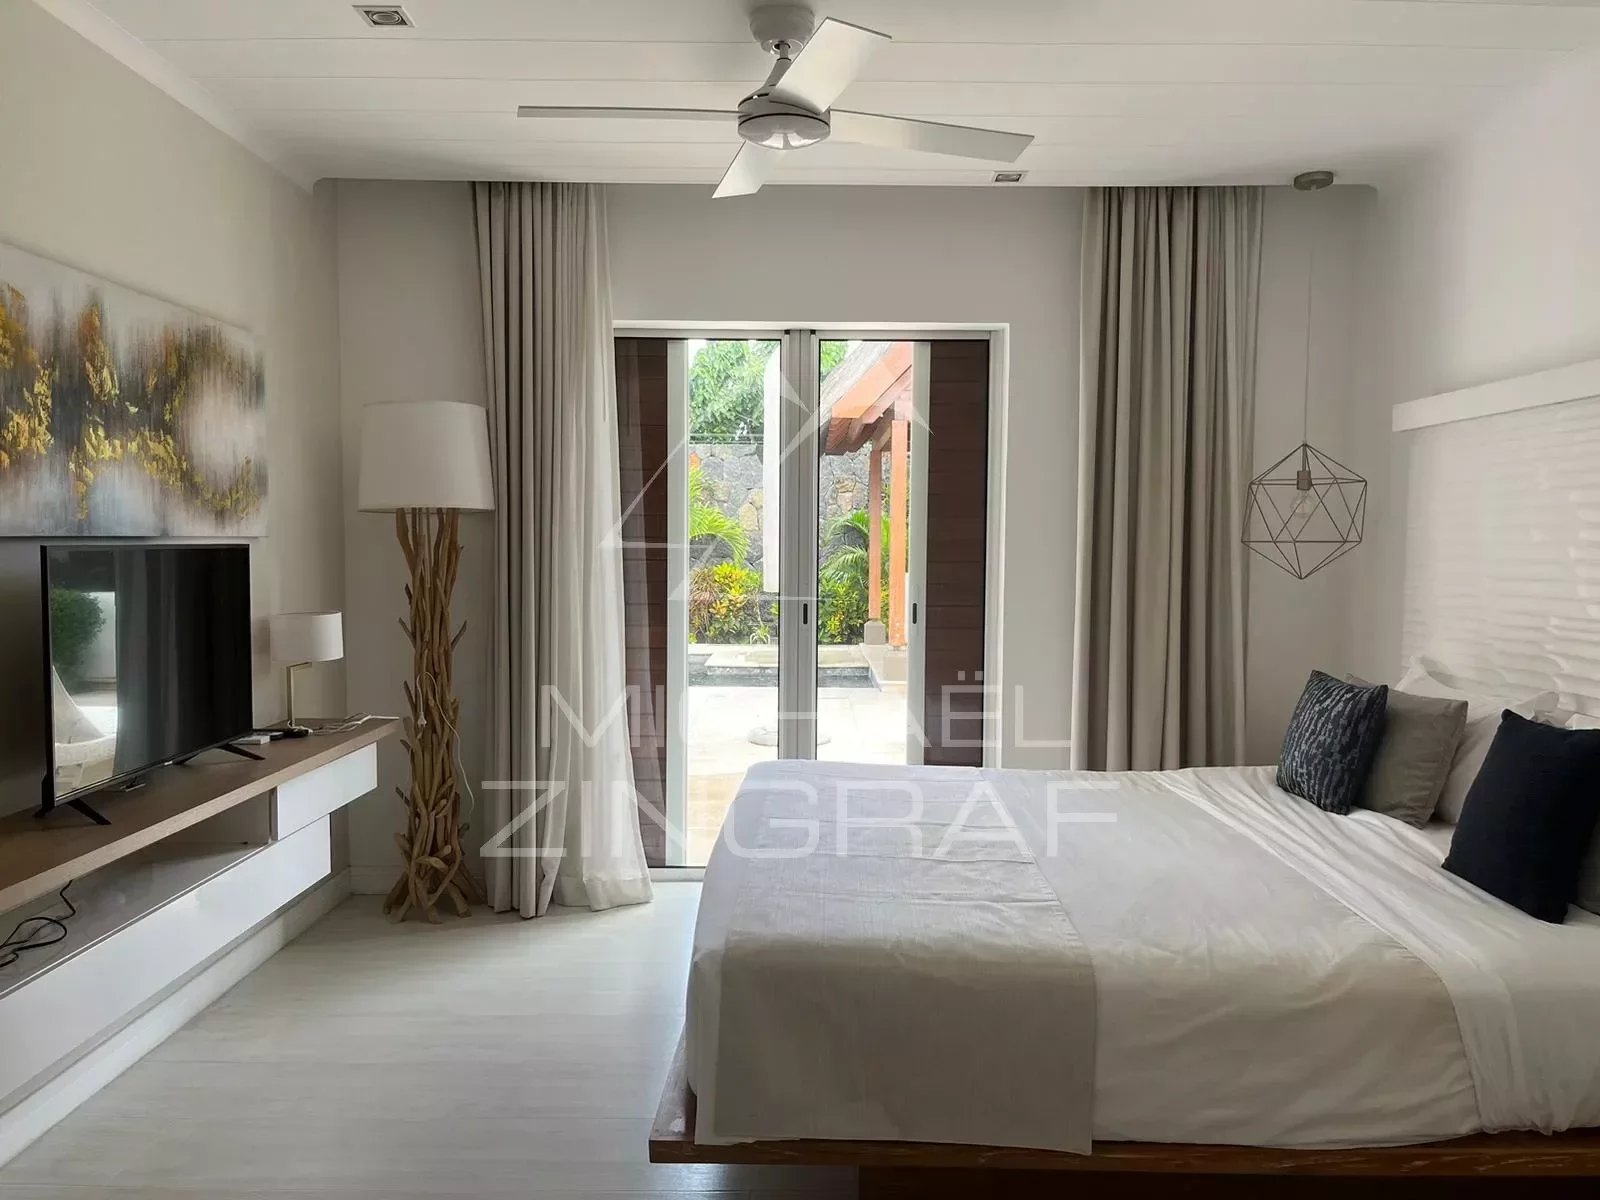 3-Bedroom Villa in Prestigious Residence